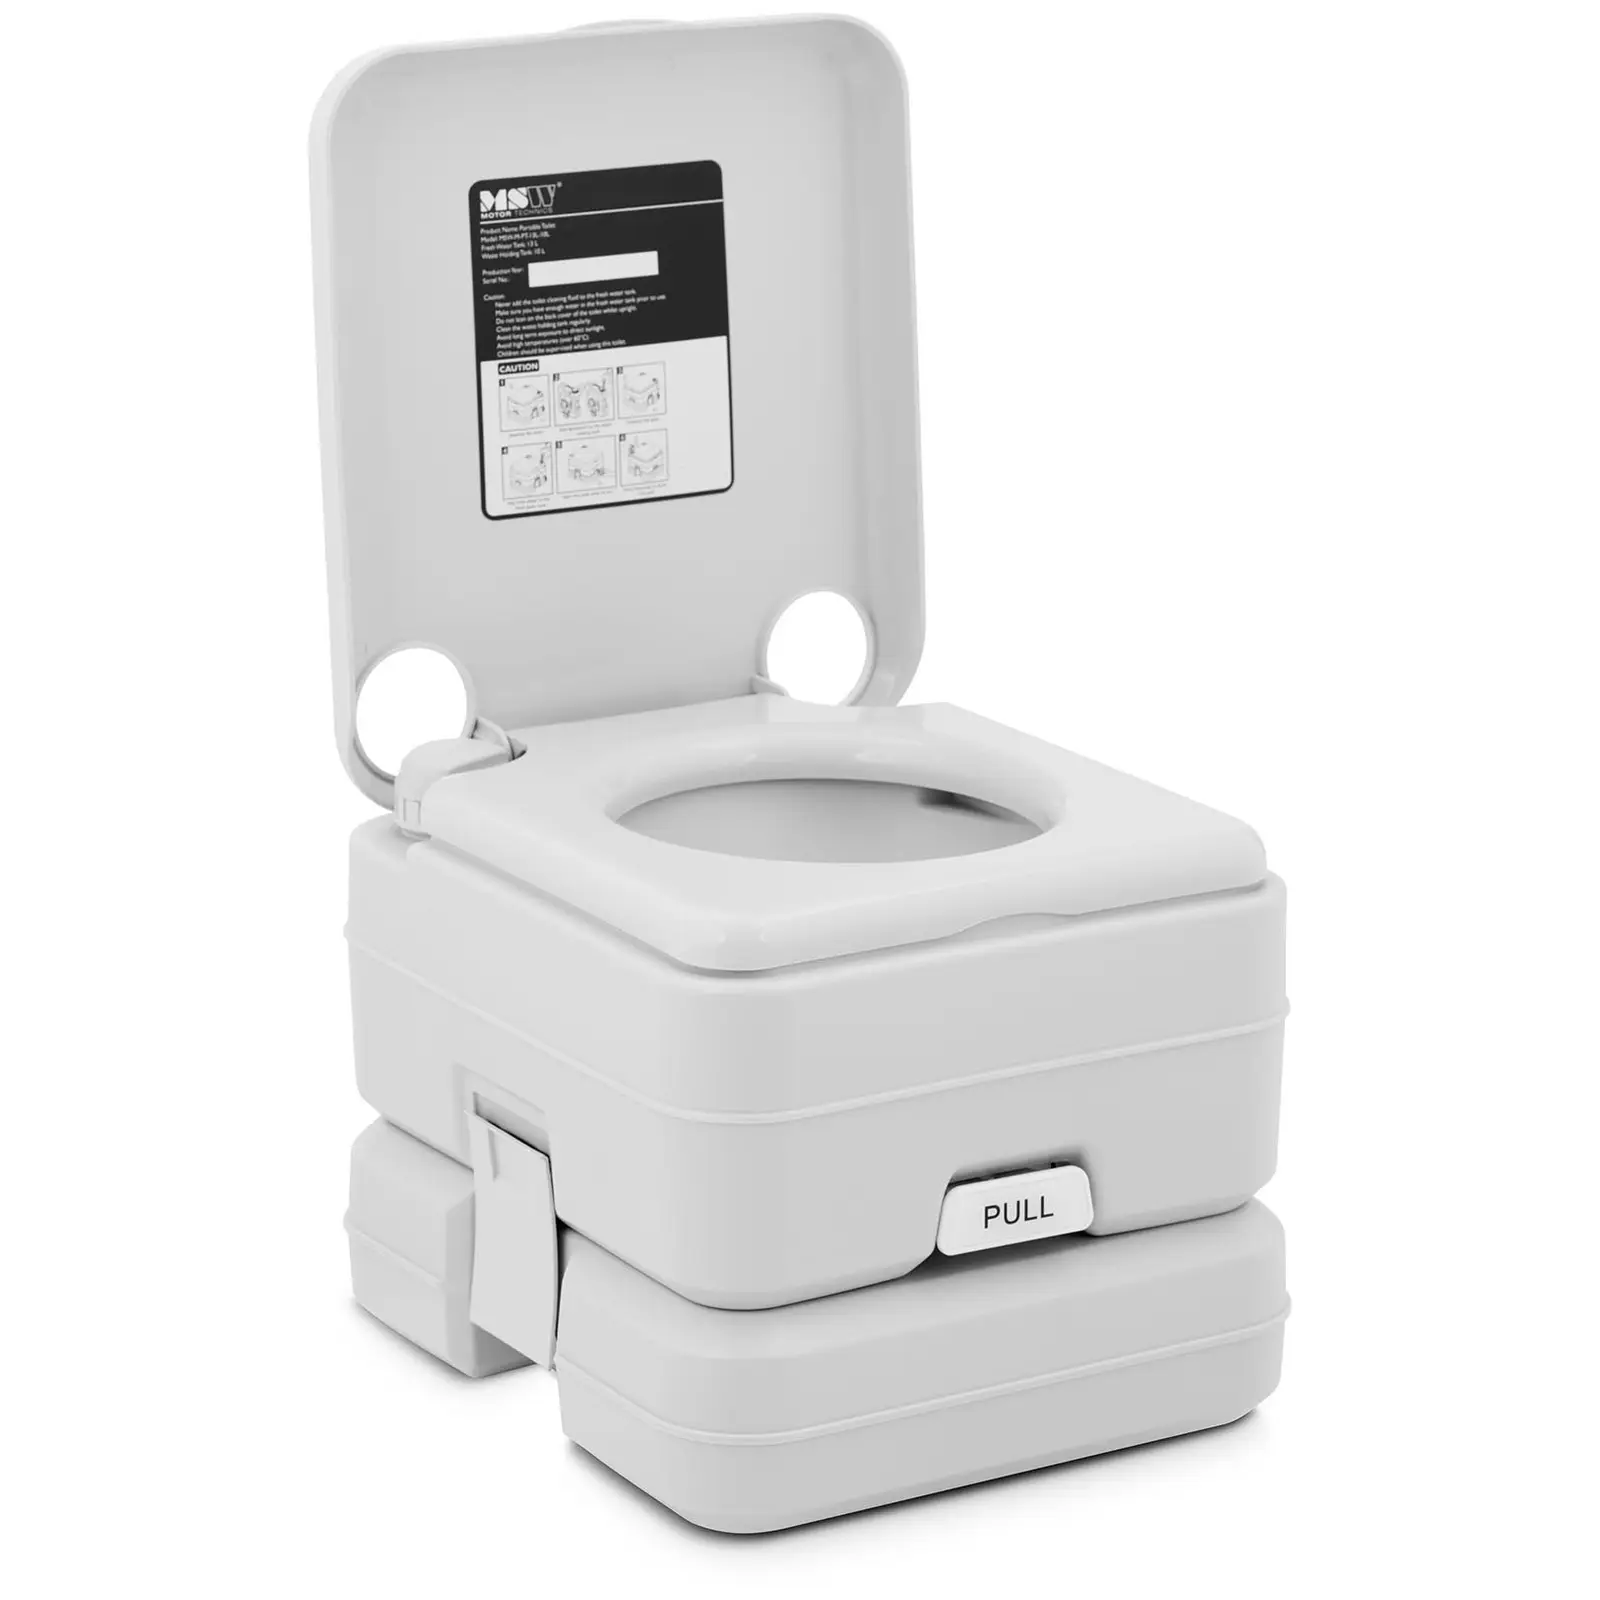 WC portátil - compacto - para camping, barcos y otros - respetuoso con el medio ambiente - sin electricidad